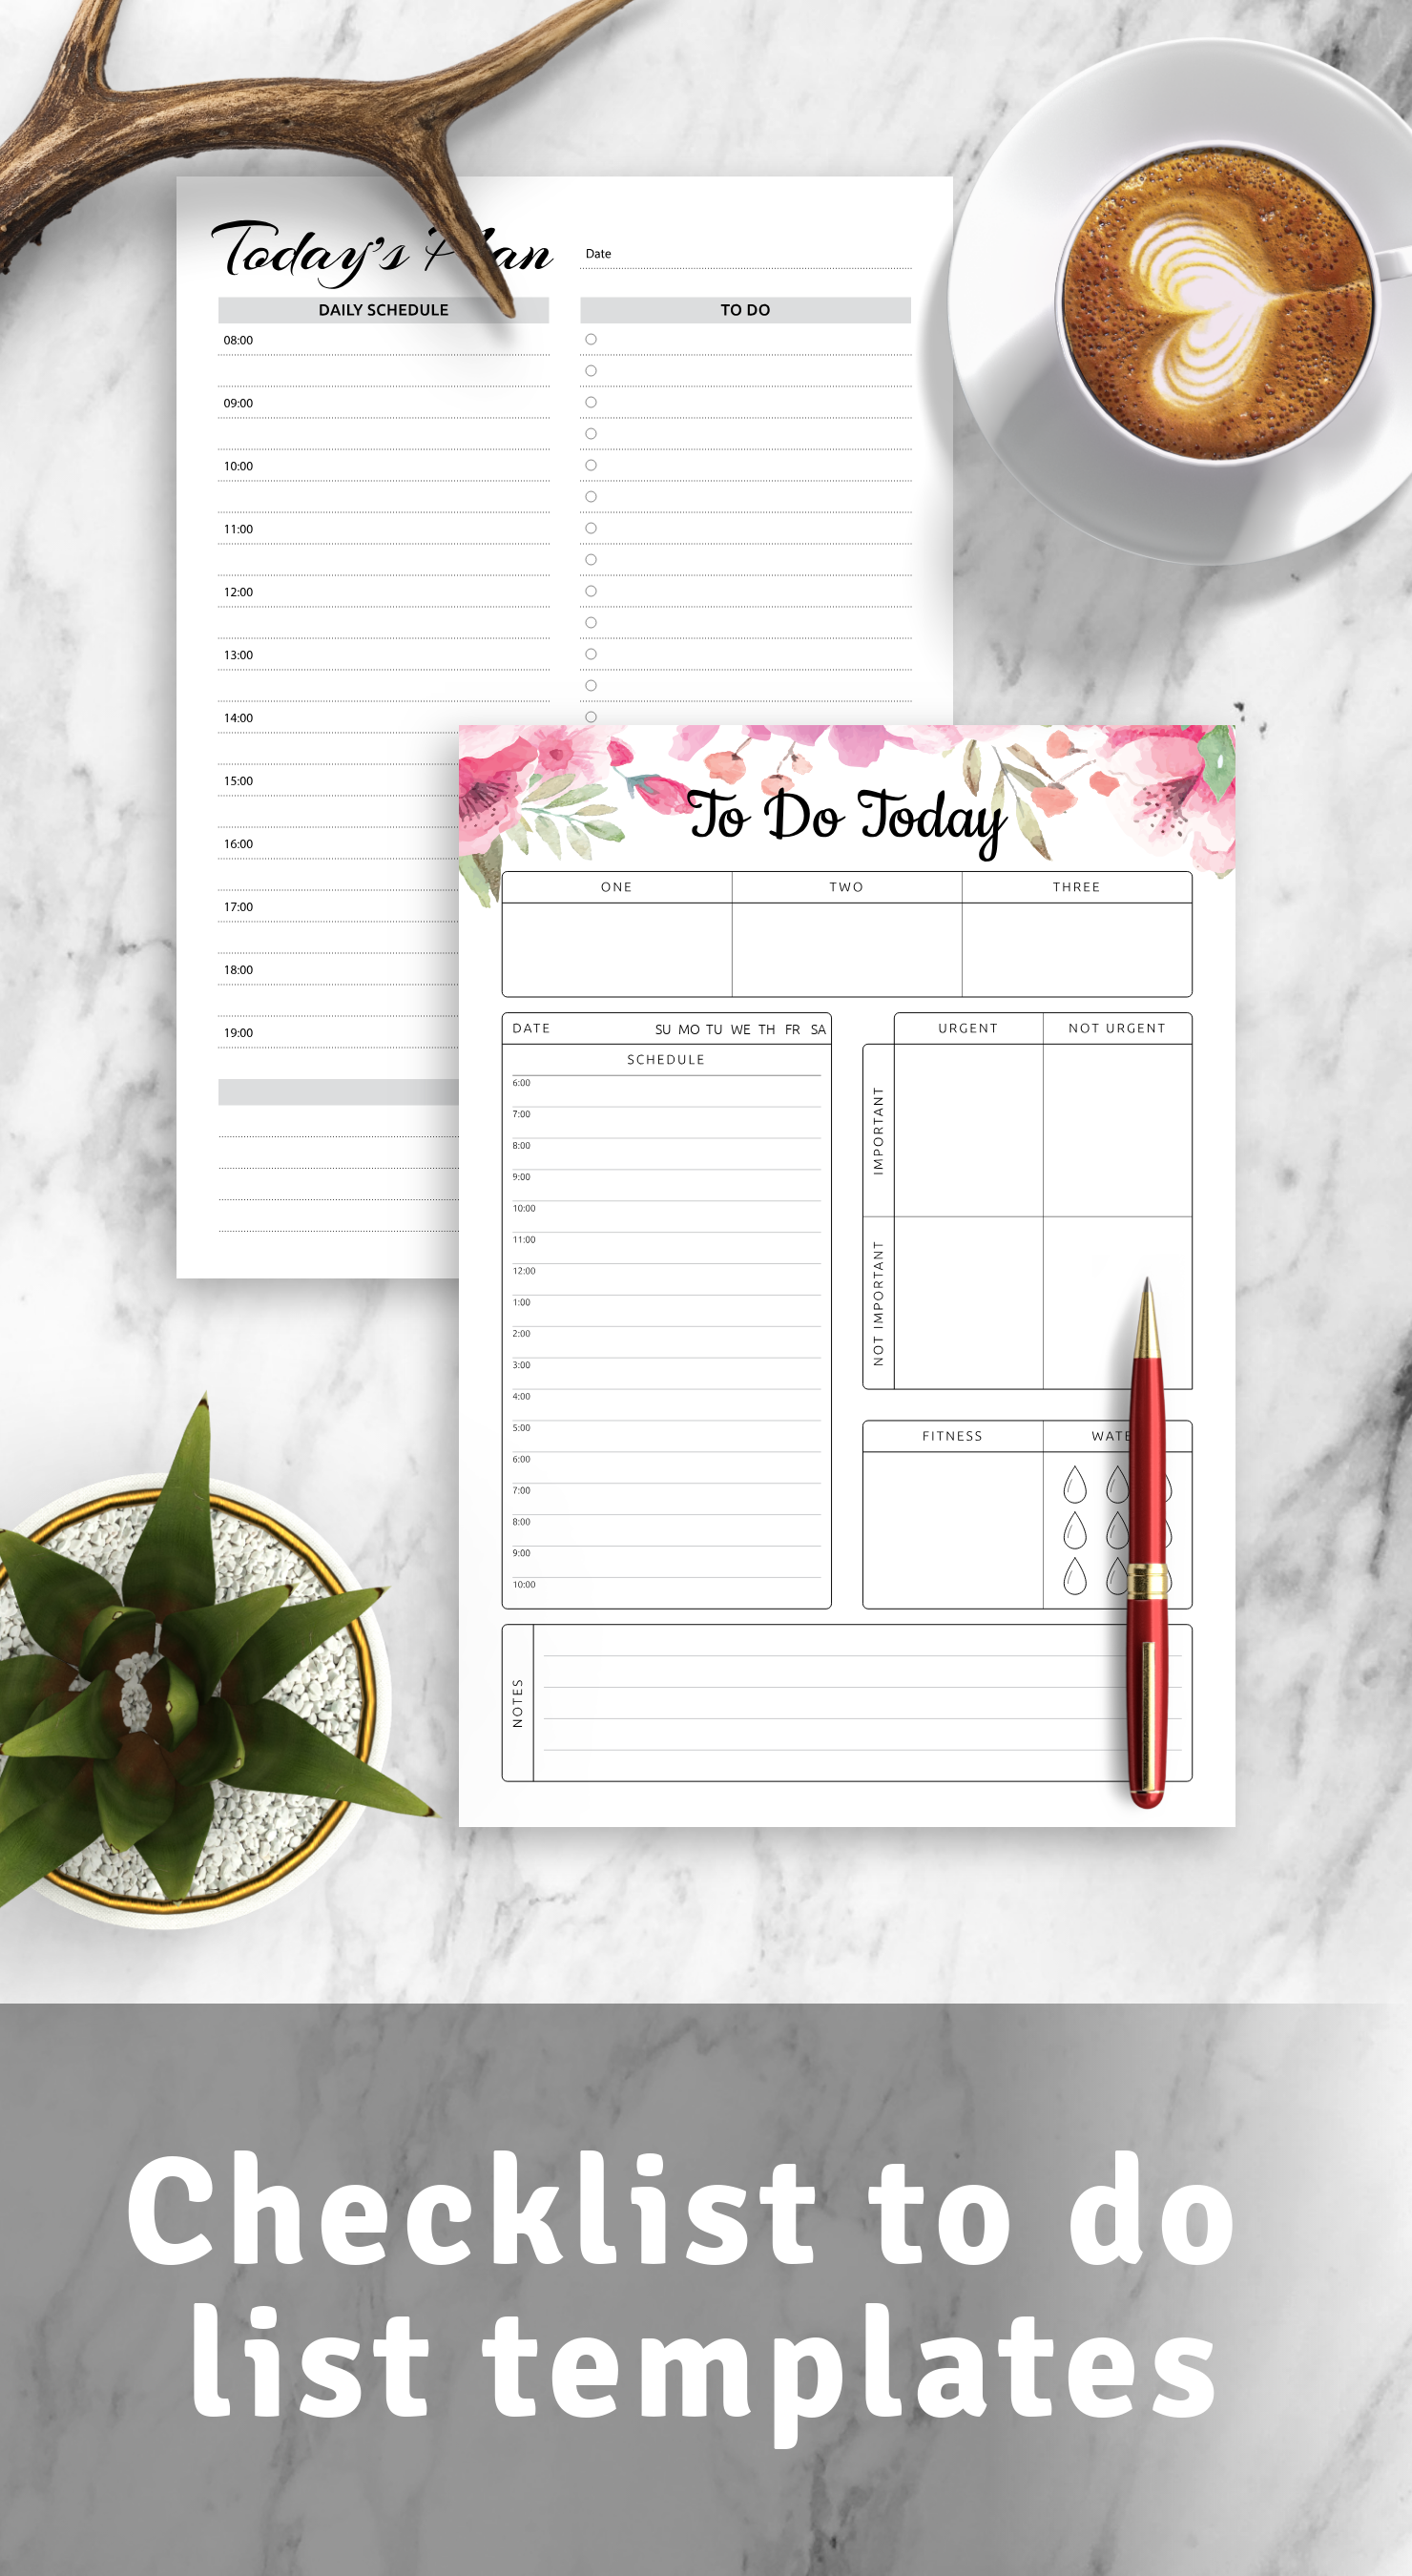 Get checklist to do list templates PDF